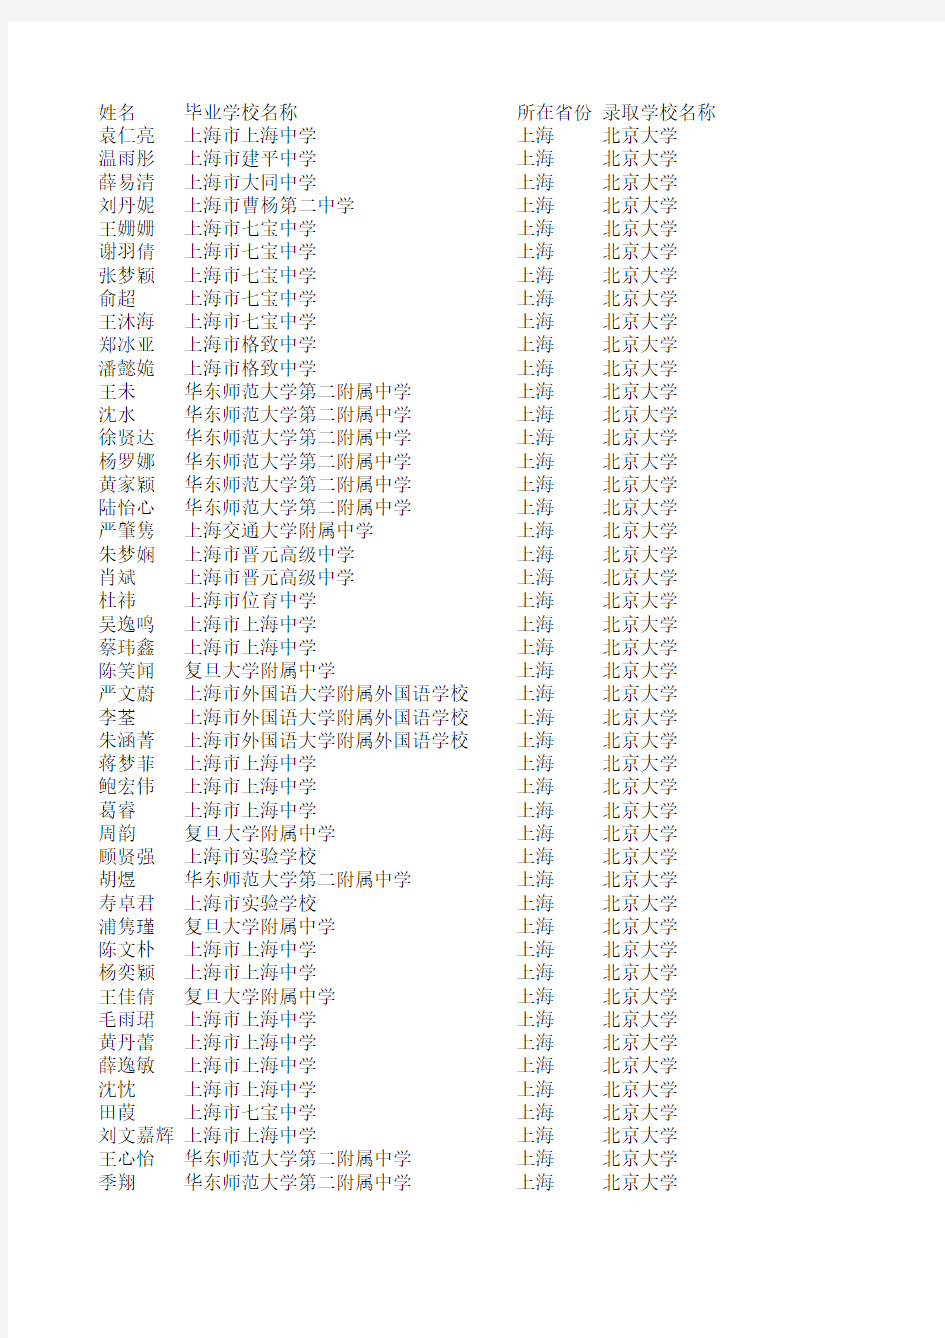 2011年北京大学自主招生录取名单(上海考生)